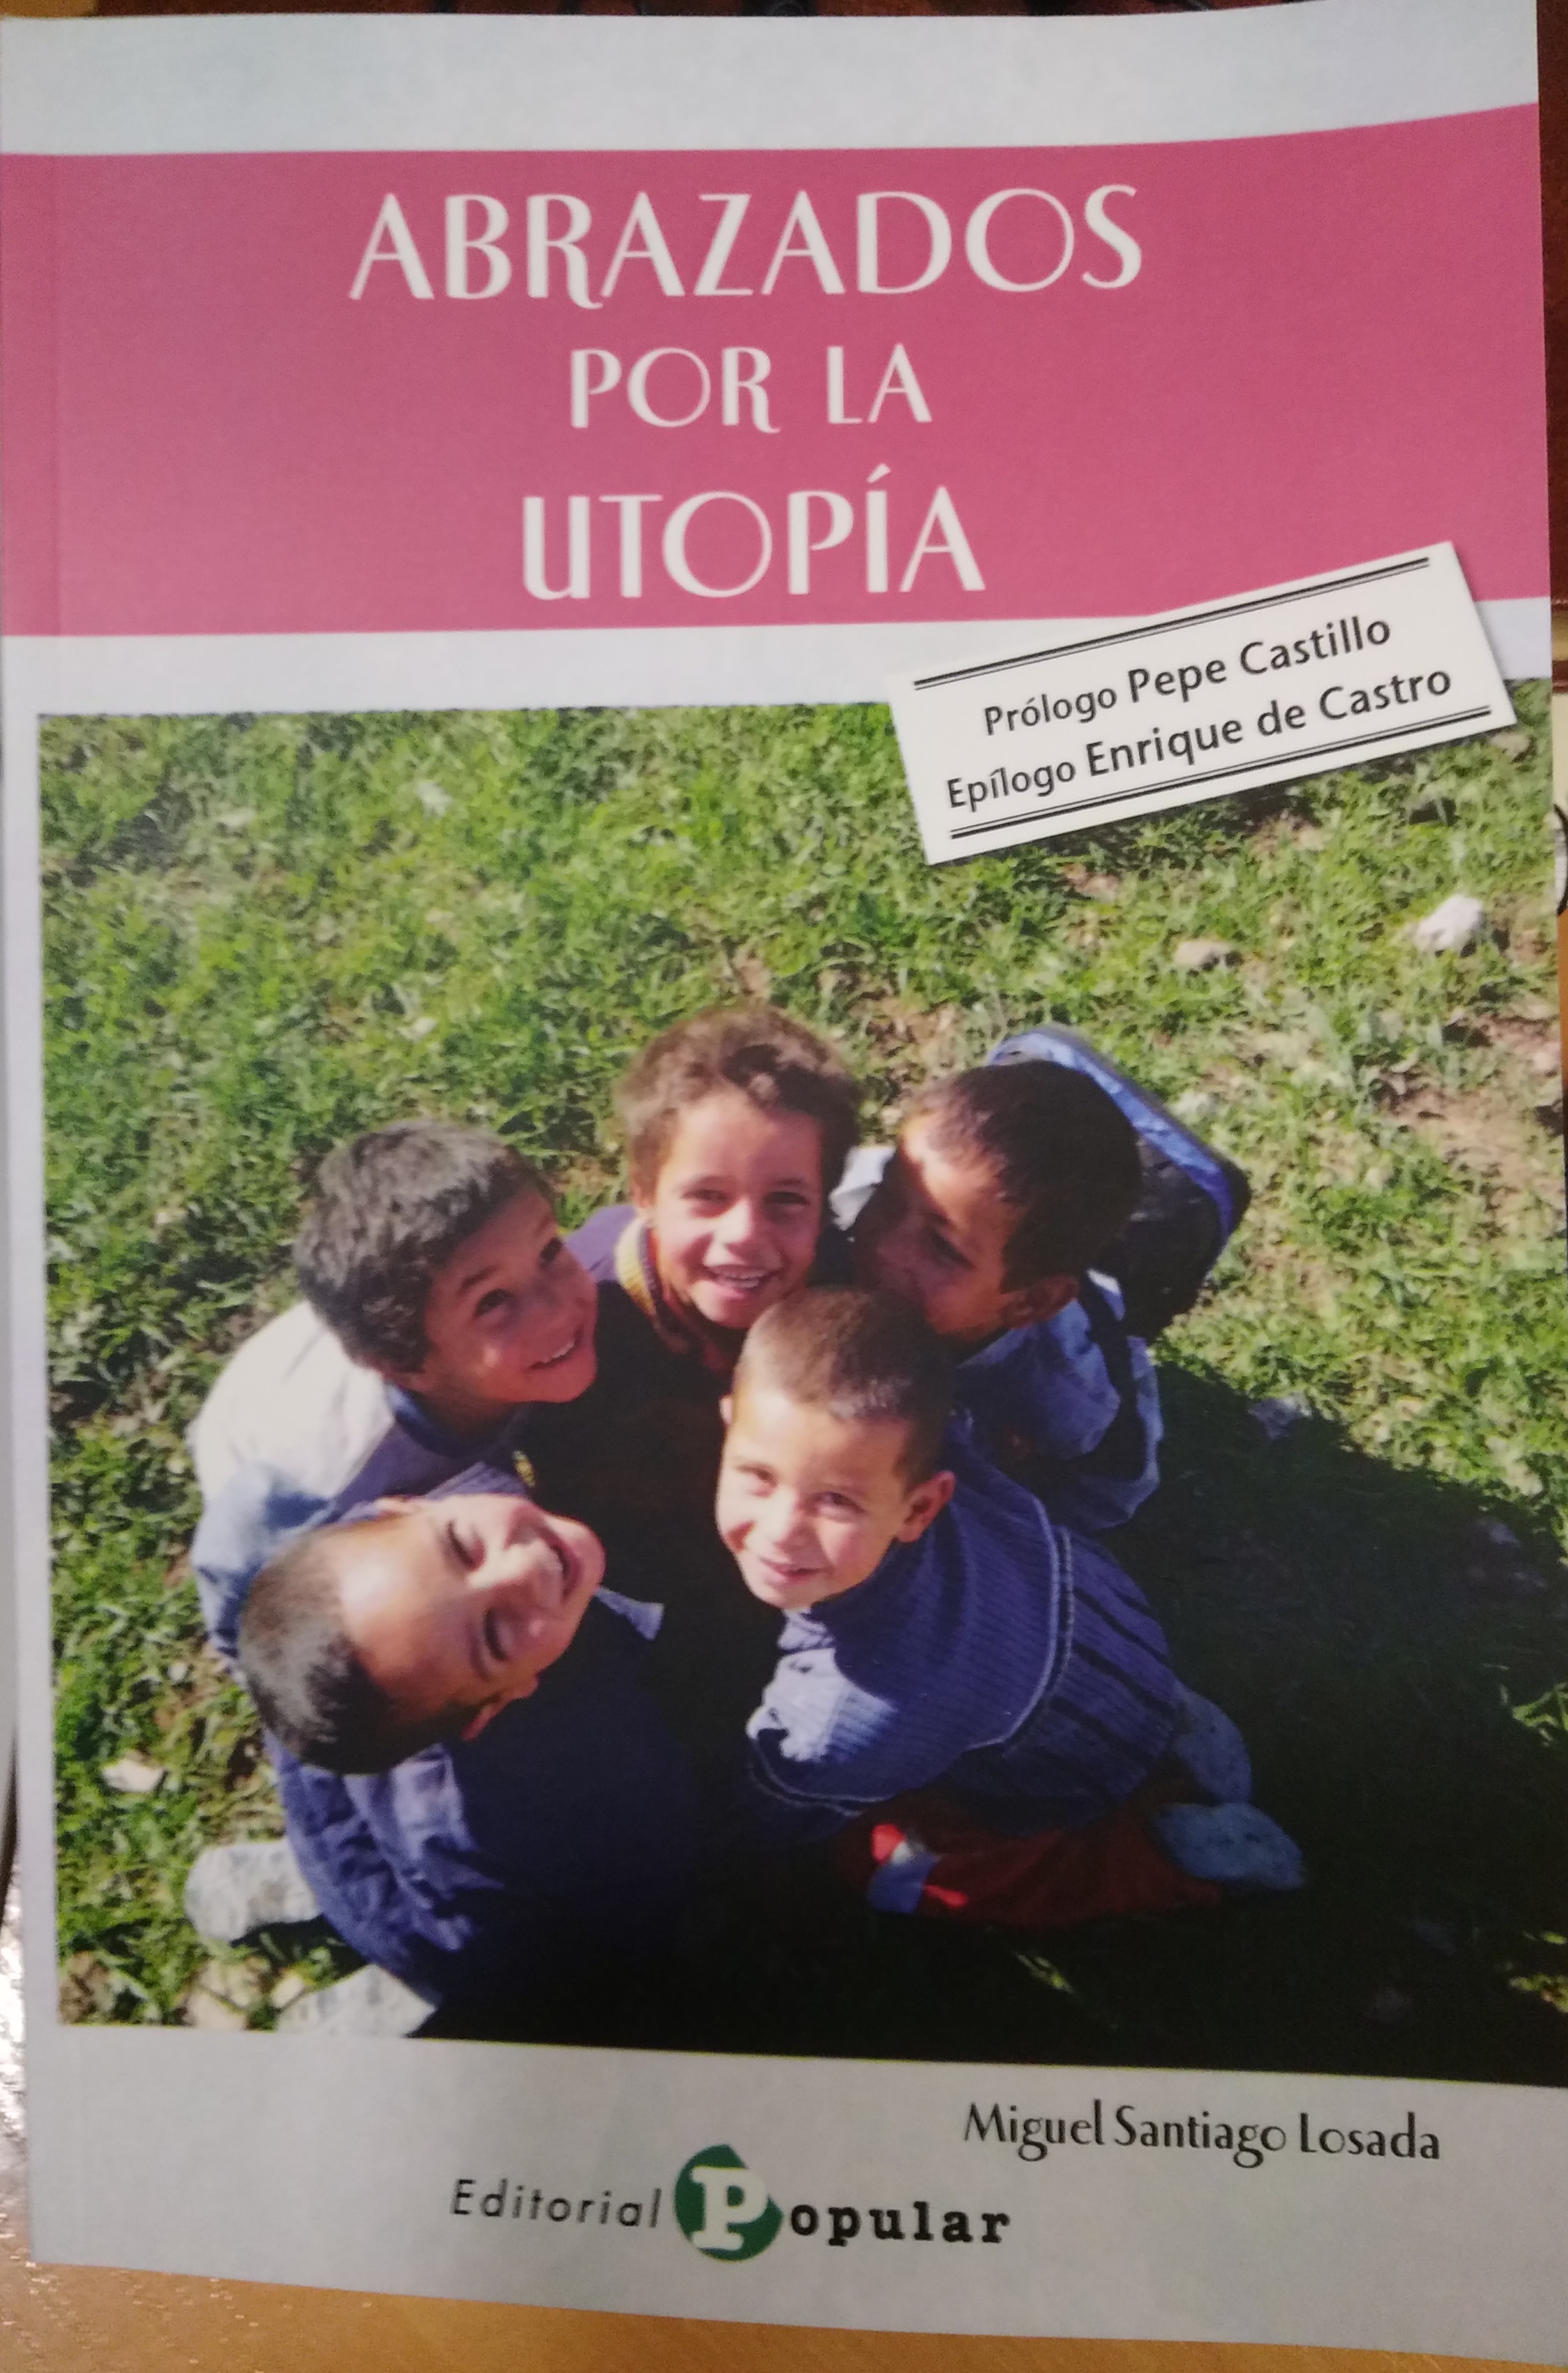 Presentación del libro “Abrazados por la Utopía”, de Miguel Santiago